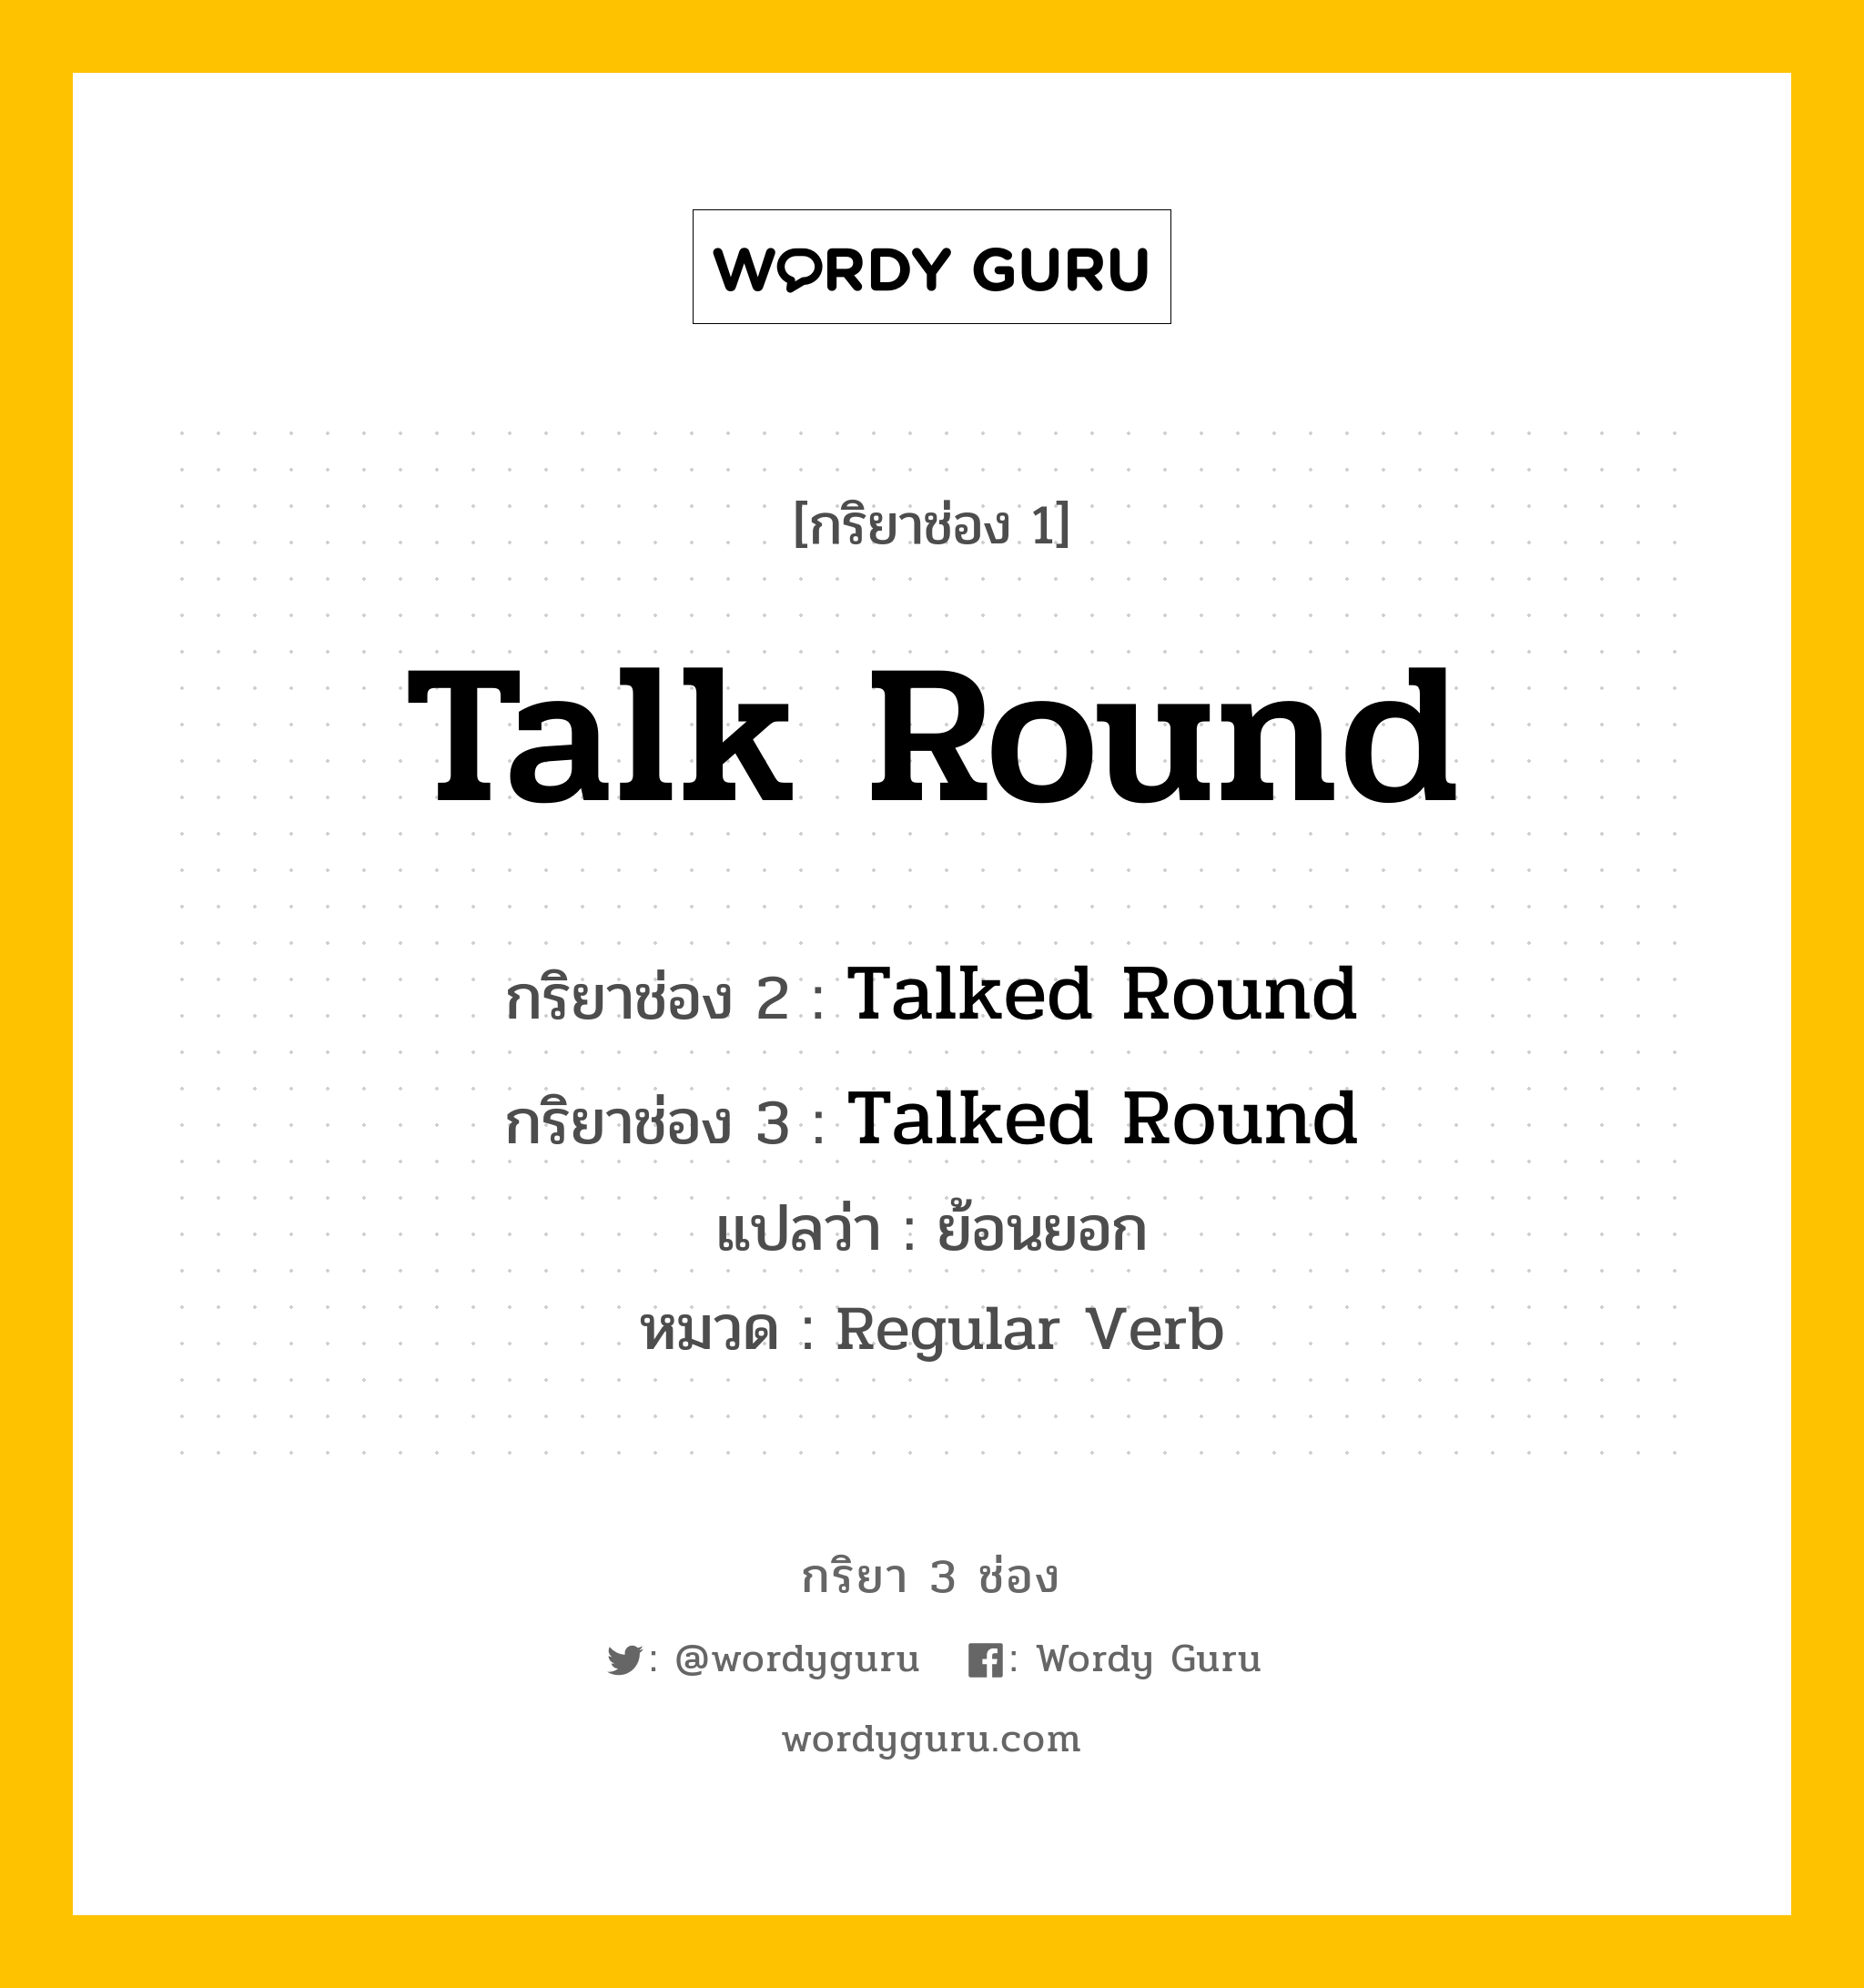 กริยา 3 ช่อง: Talk Round ช่อง 2 Talk Round ช่อง 3 คืออะไร, กริยาช่อง 1 Talk Round กริยาช่อง 2 Talked Round กริยาช่อง 3 Talked Round แปลว่า ย้อนยอก หมวด Regular Verb หมวด Regular Verb